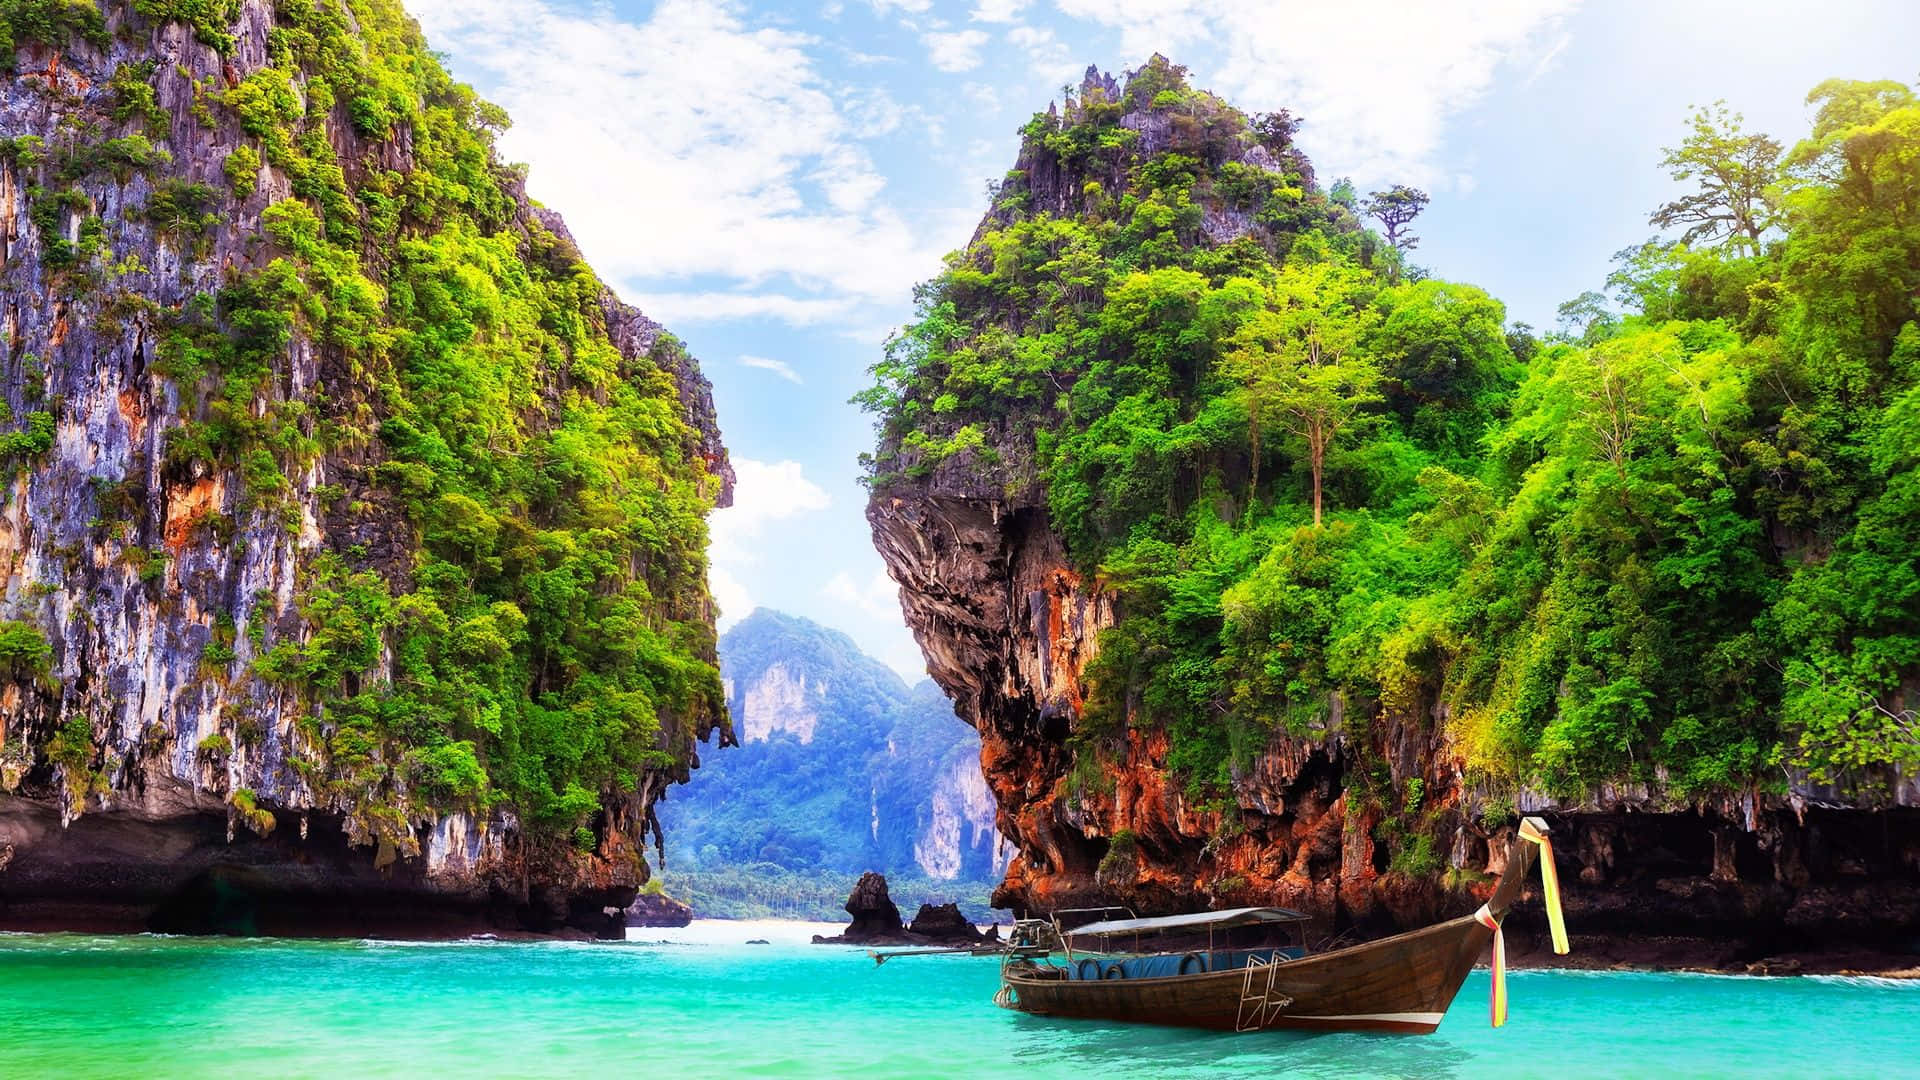 Impresionantevista Panorámica De Una Playa Virgen En Tailandia. Fondo de pantalla